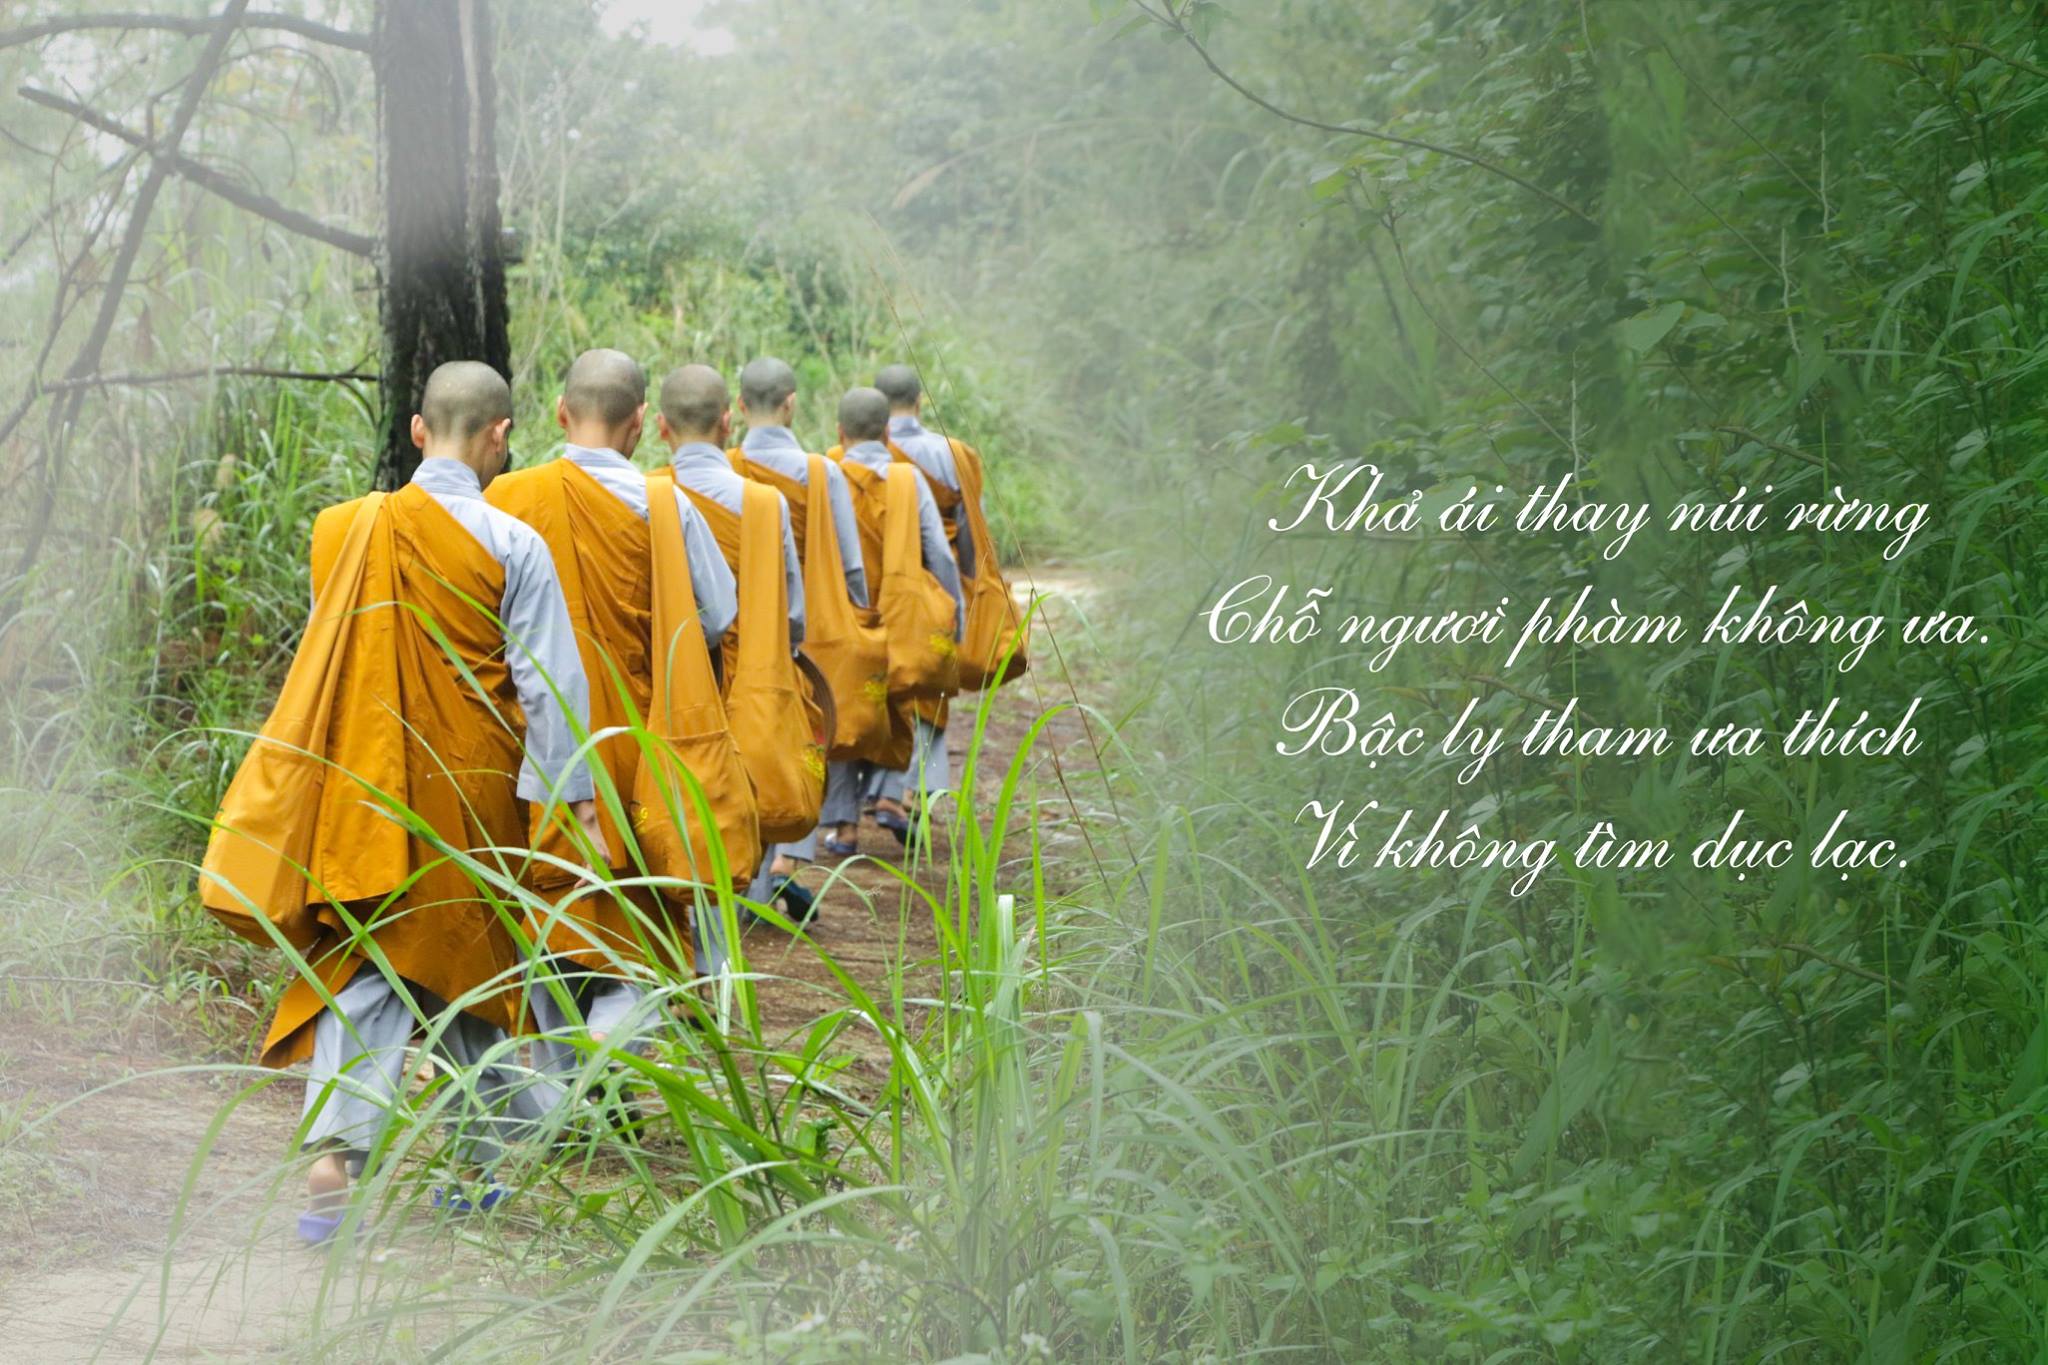 Trong rừng, Ni chúng tu hành hạnh thiểu dục tri túc, sống độc cư và hạnh nhẫn nhục trước những nghịch cảnh bên ngoài, tiến đến thực hành miên mật các pháp giải thoát của chư Phật